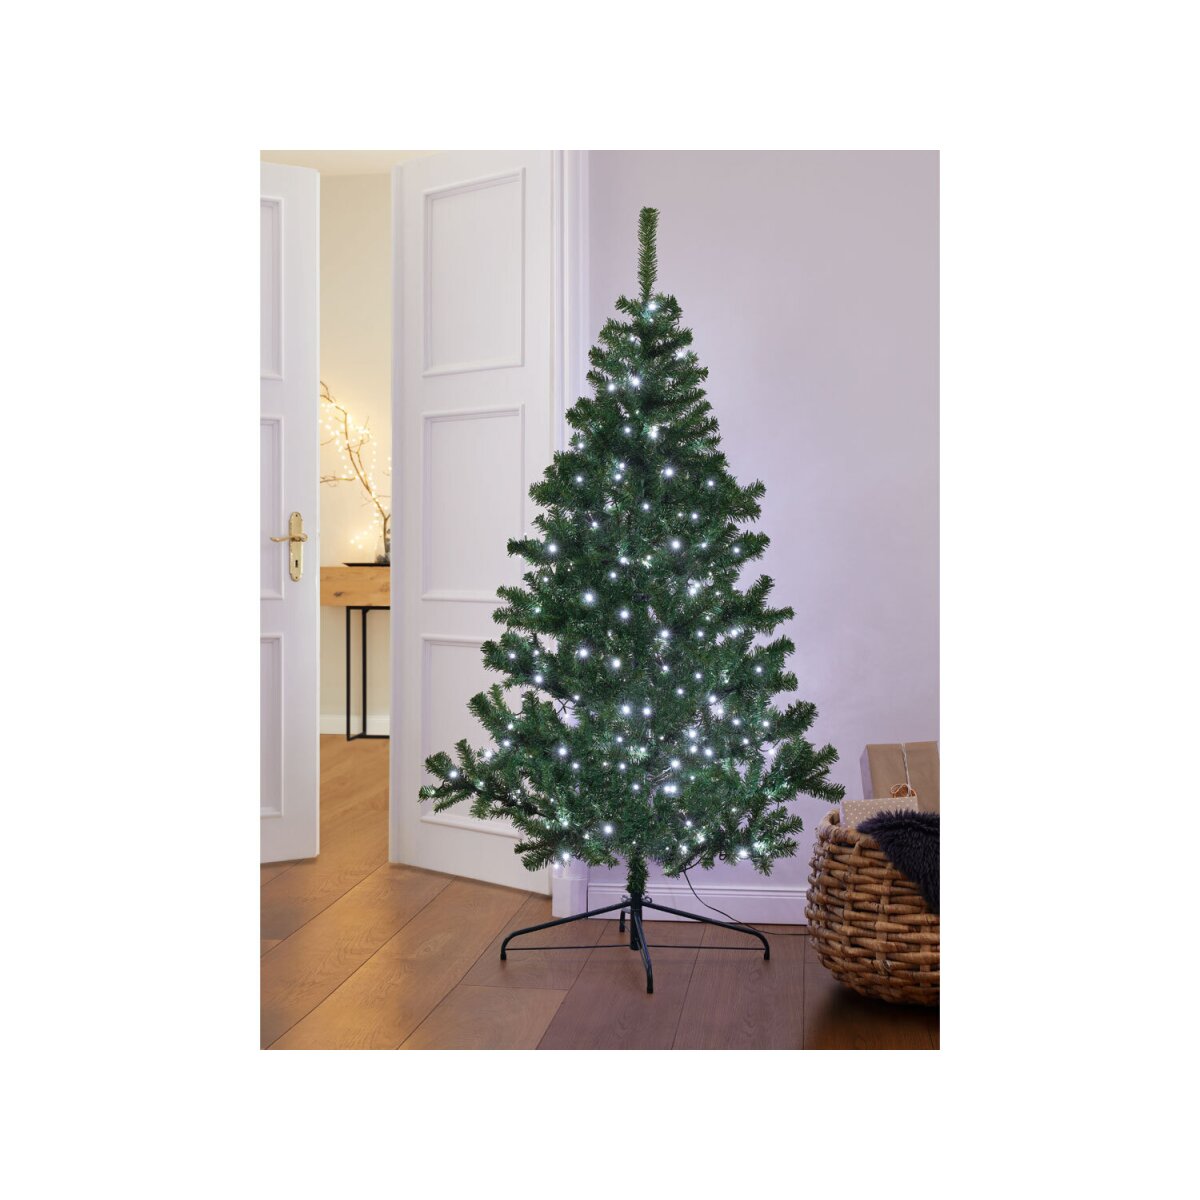 LIVARNO home Weihnachtsbaum künstlich, mit besonders dichtem Geäst -  B-Ware, 15,99 €